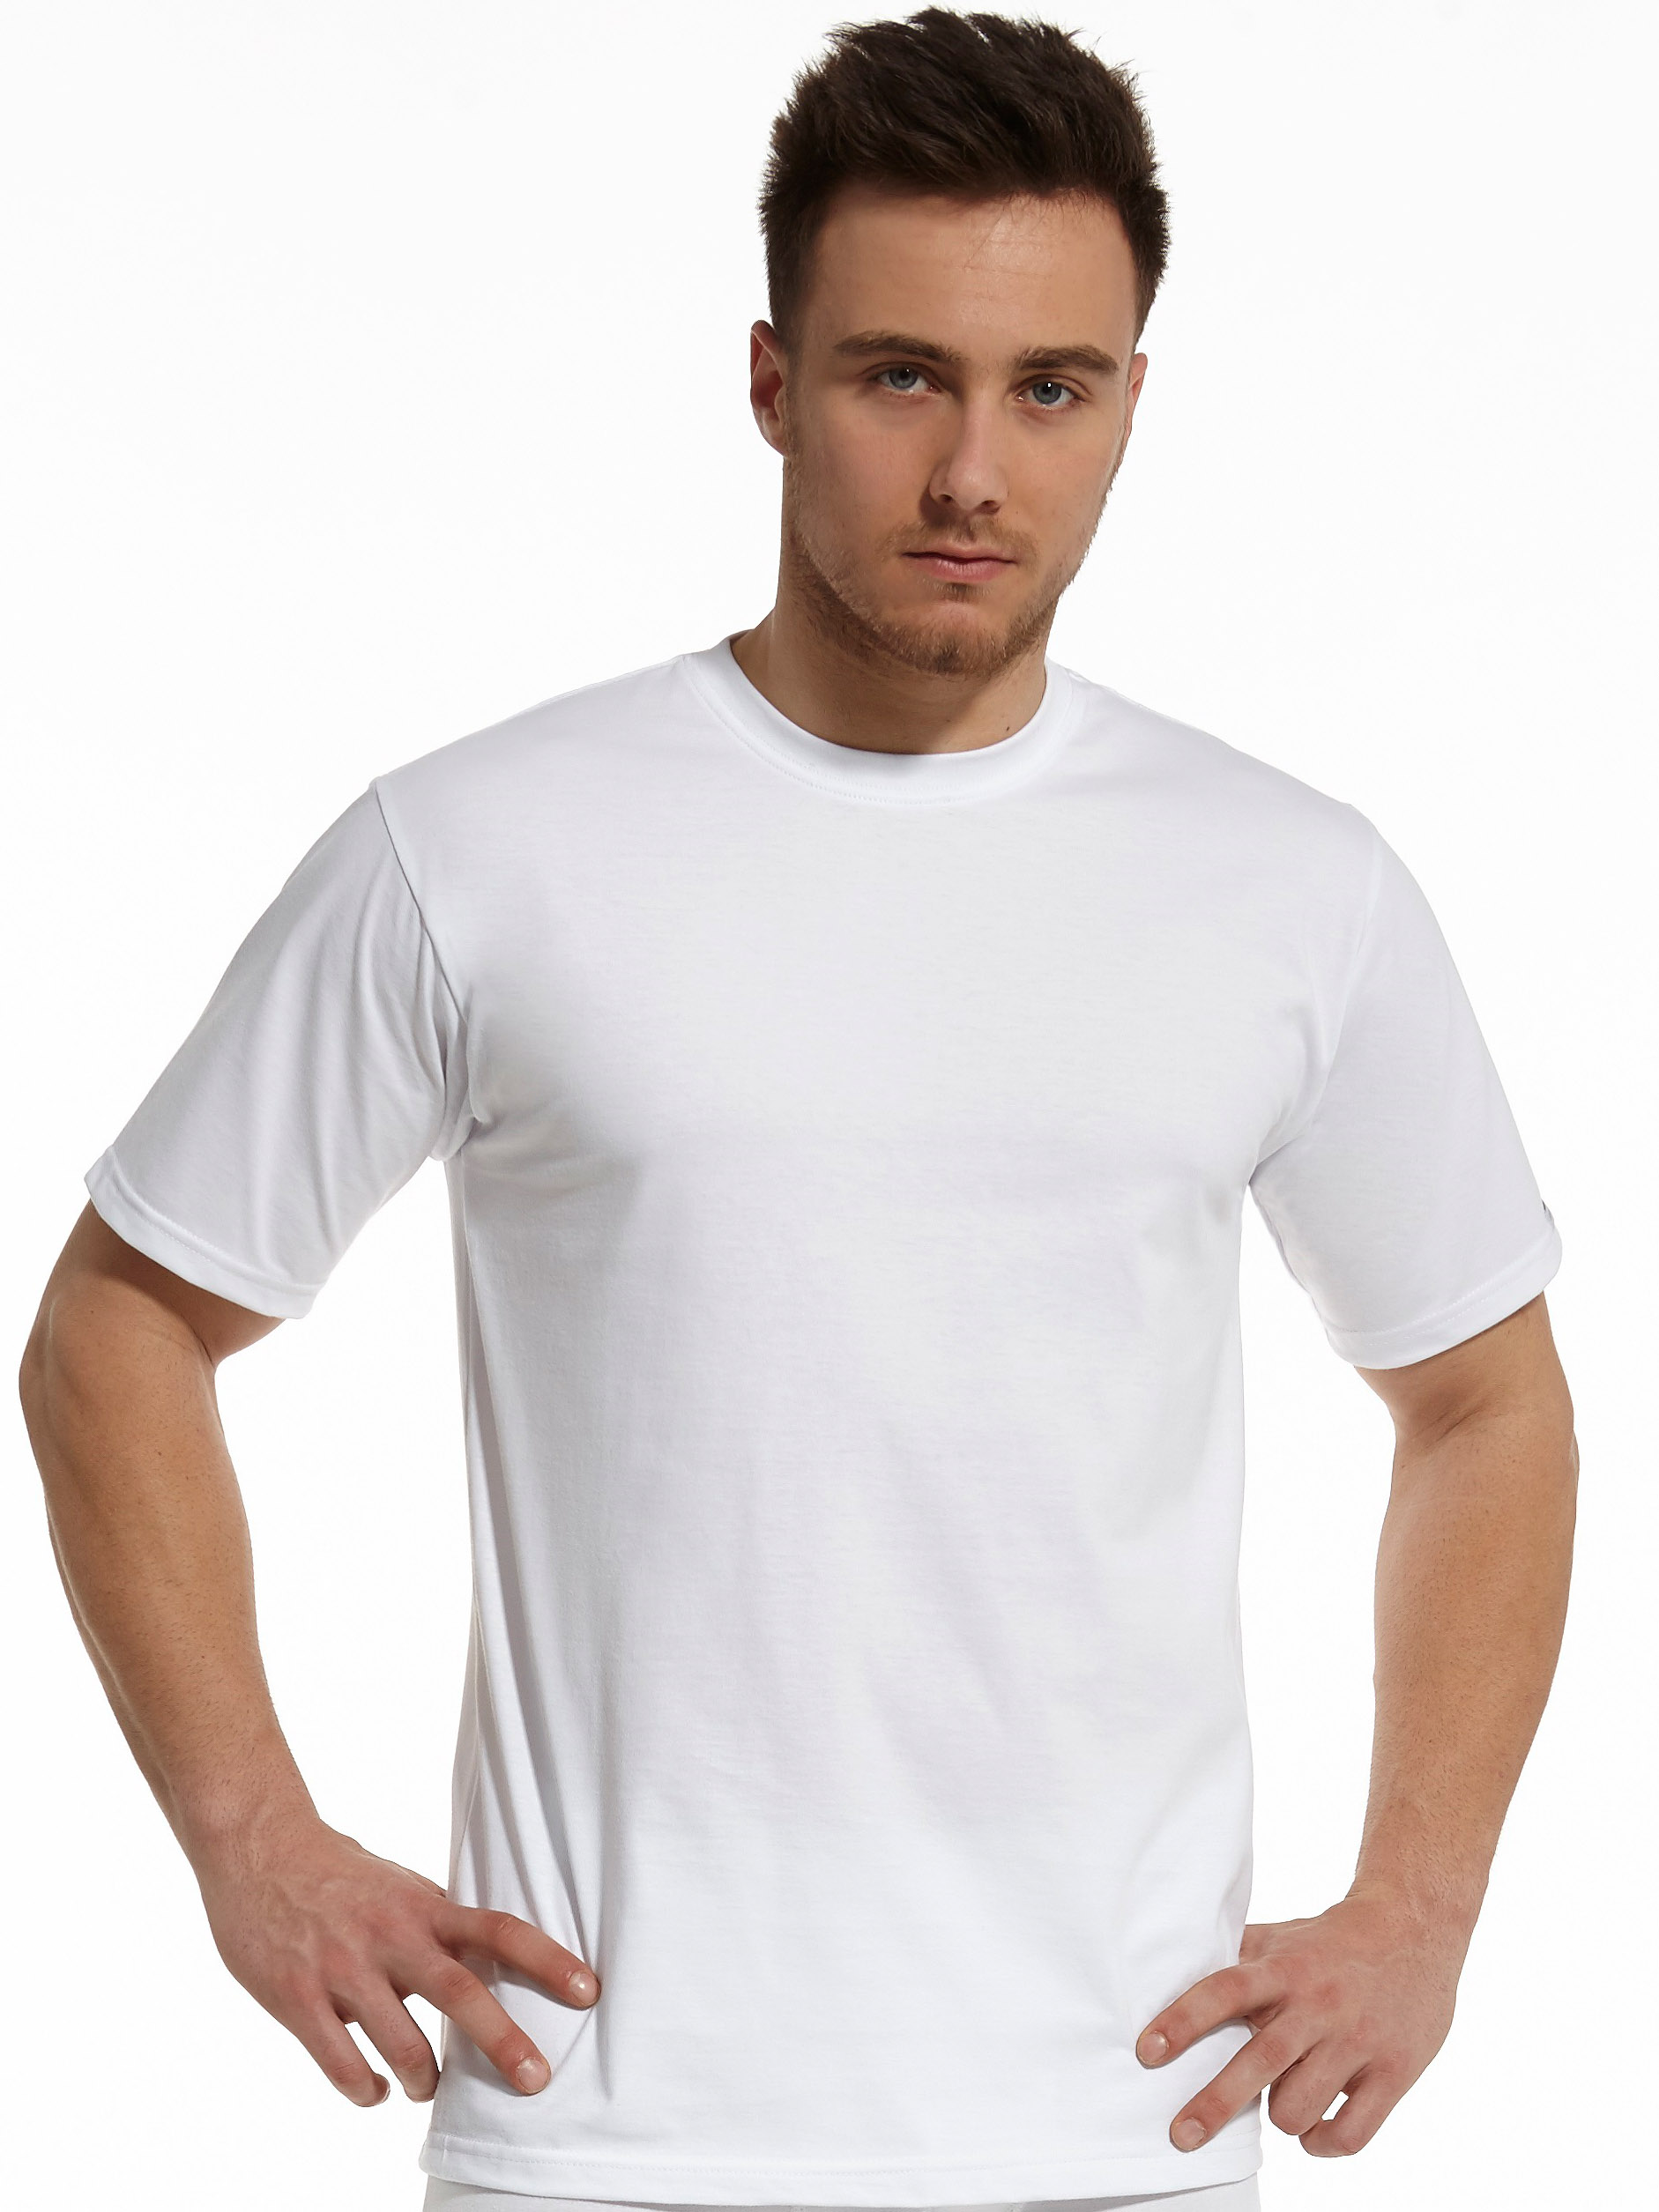 Мужская белая футболка Cornette Young 170-182